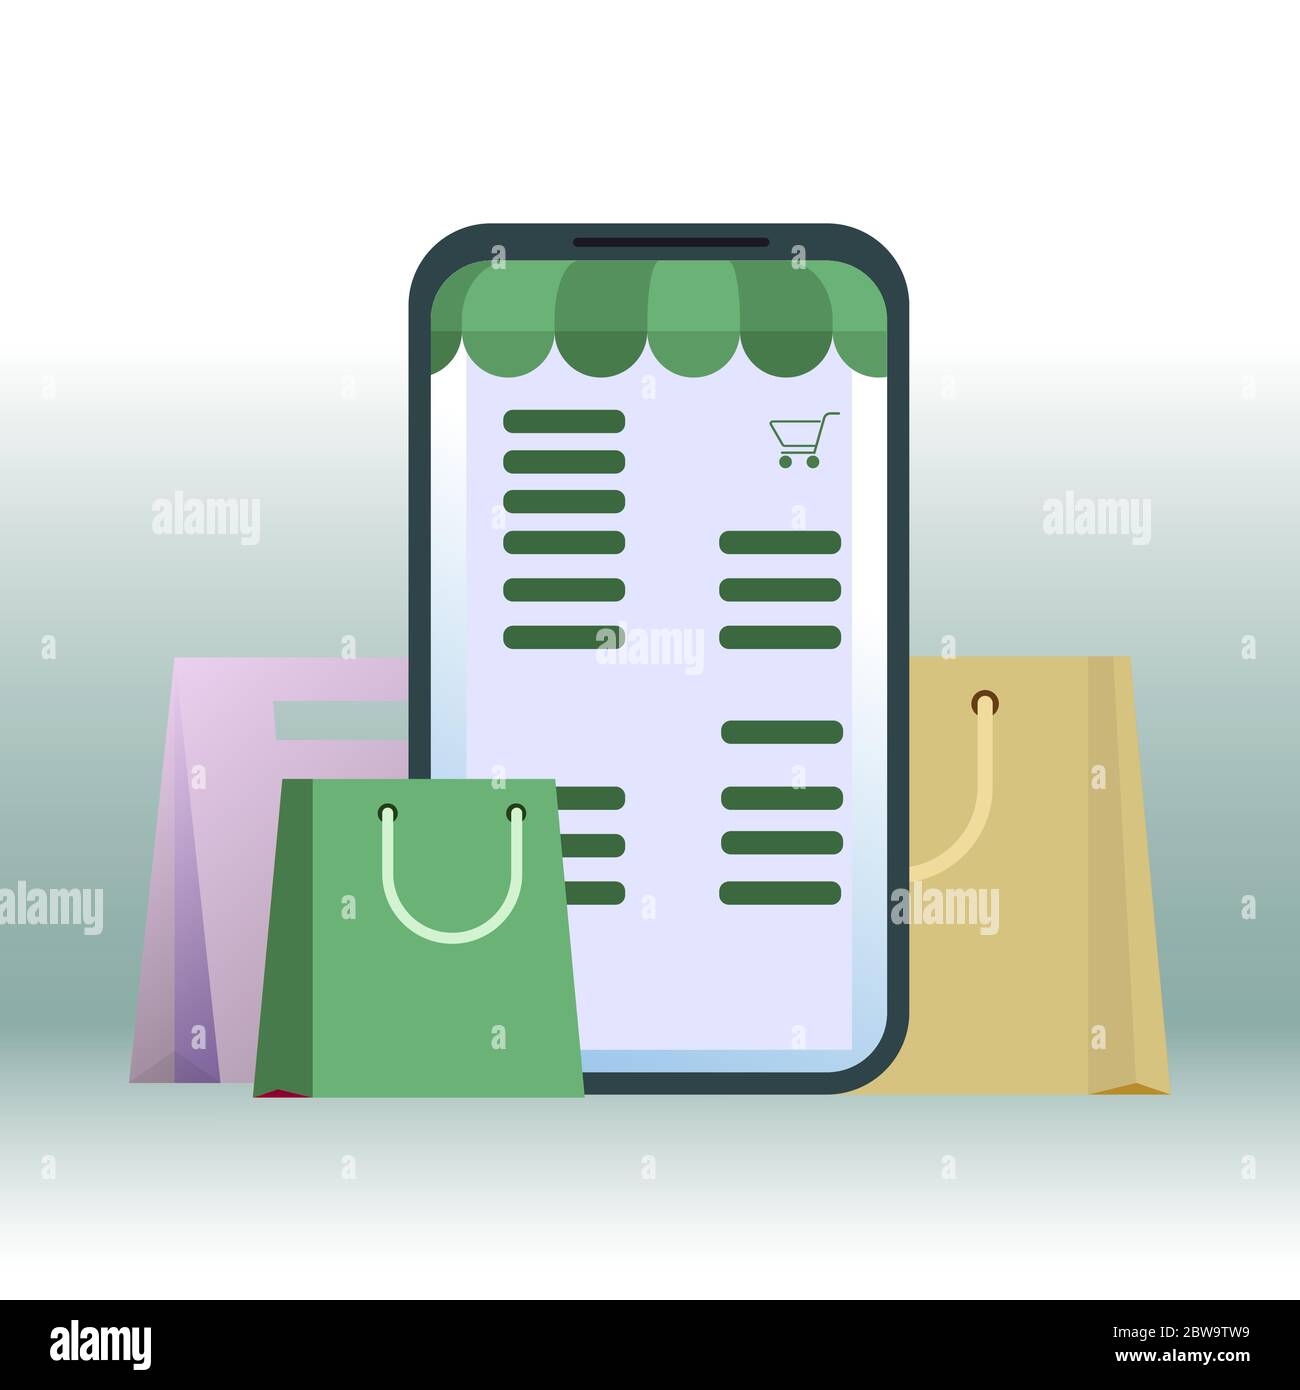 Online einkaufen, im Smartphone einkaufen. Mobiler Online-Handel, E-Shopping per Smartphone, Store-Marketing mit Markise. Vektorgrafik Stock Vektor